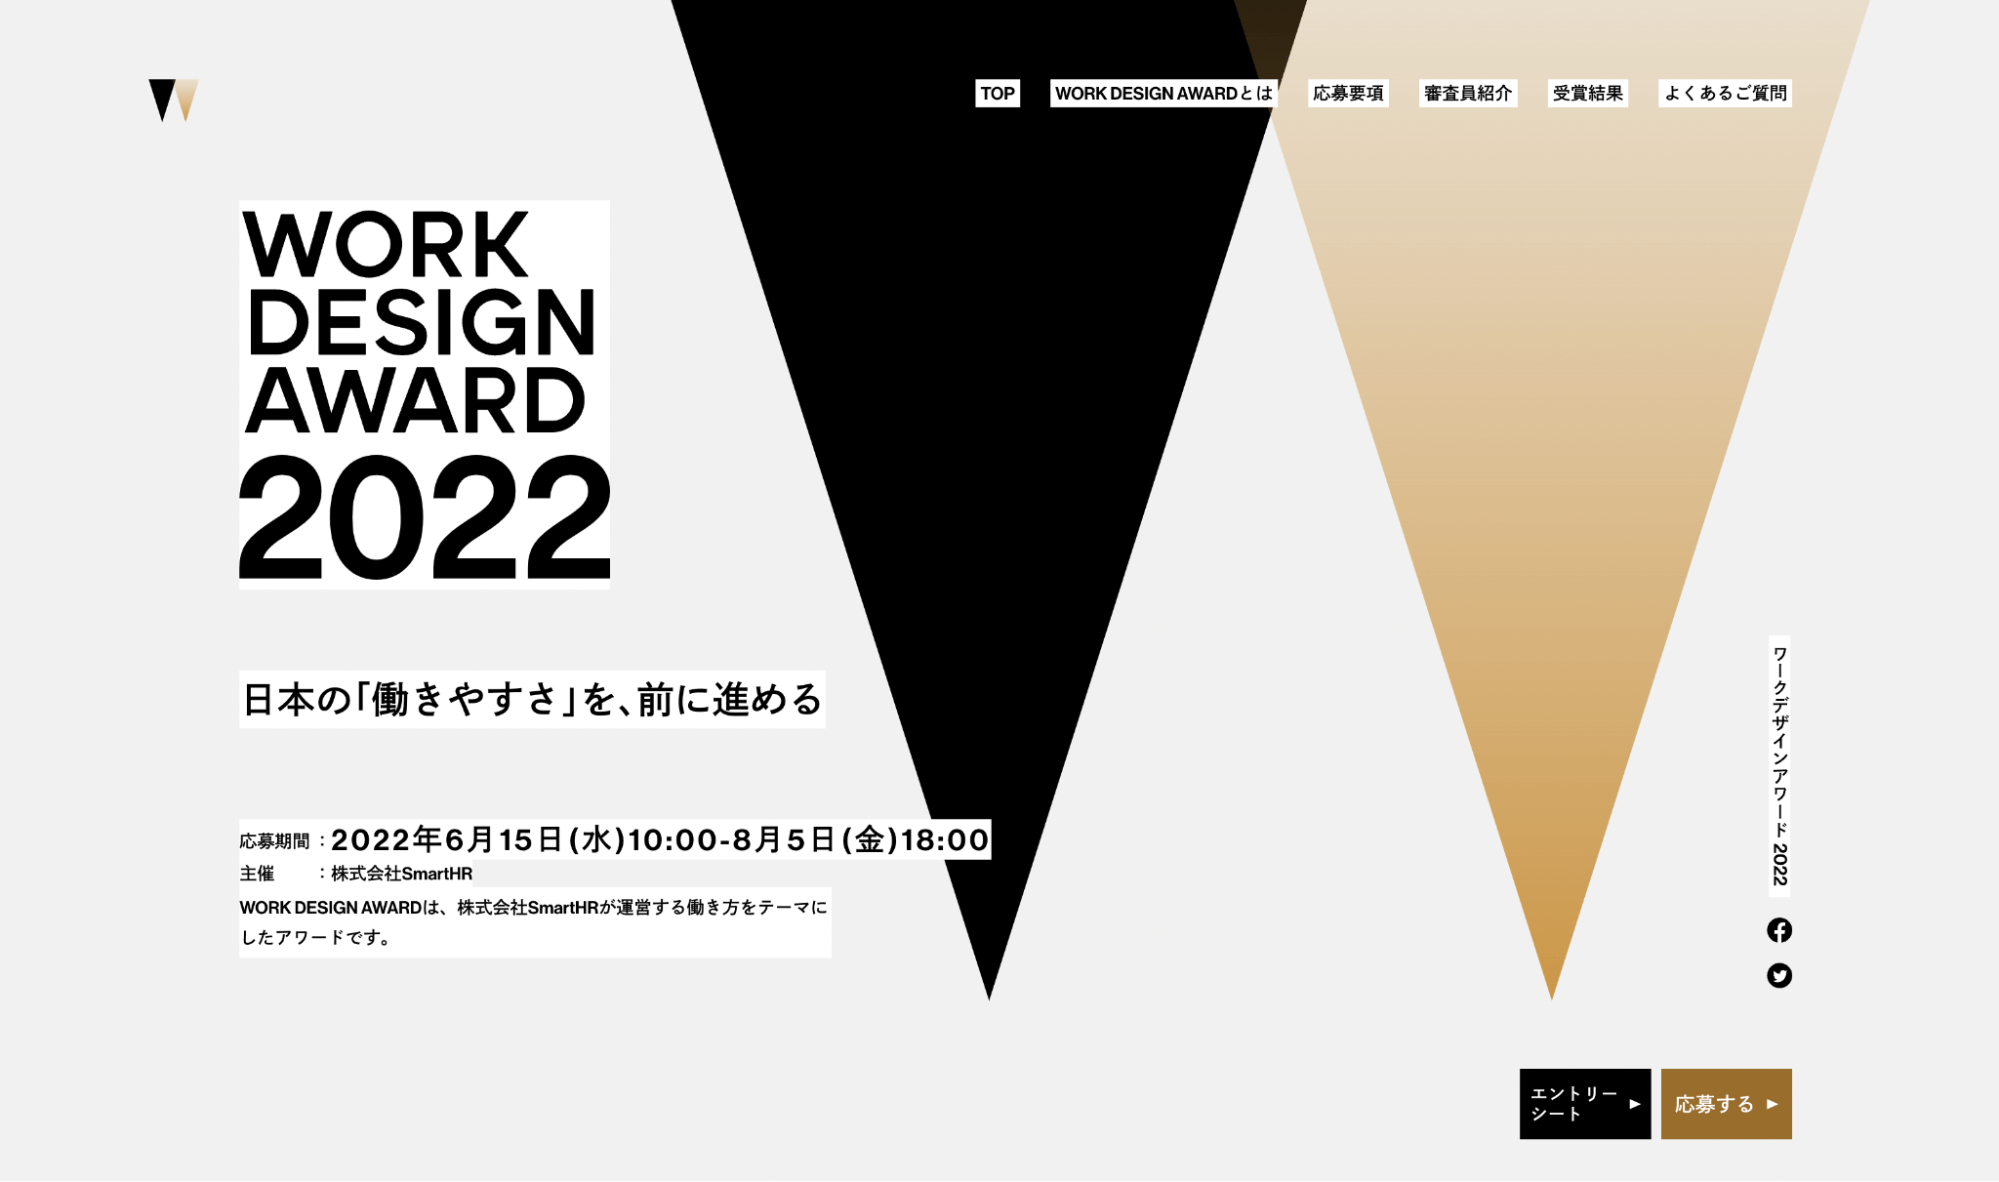 働き方をアップデートした取り組みを表彰する「WORK DESIGN AWARD」画像。黒色と茶色の逆三角形のマークが大きく表示されている。